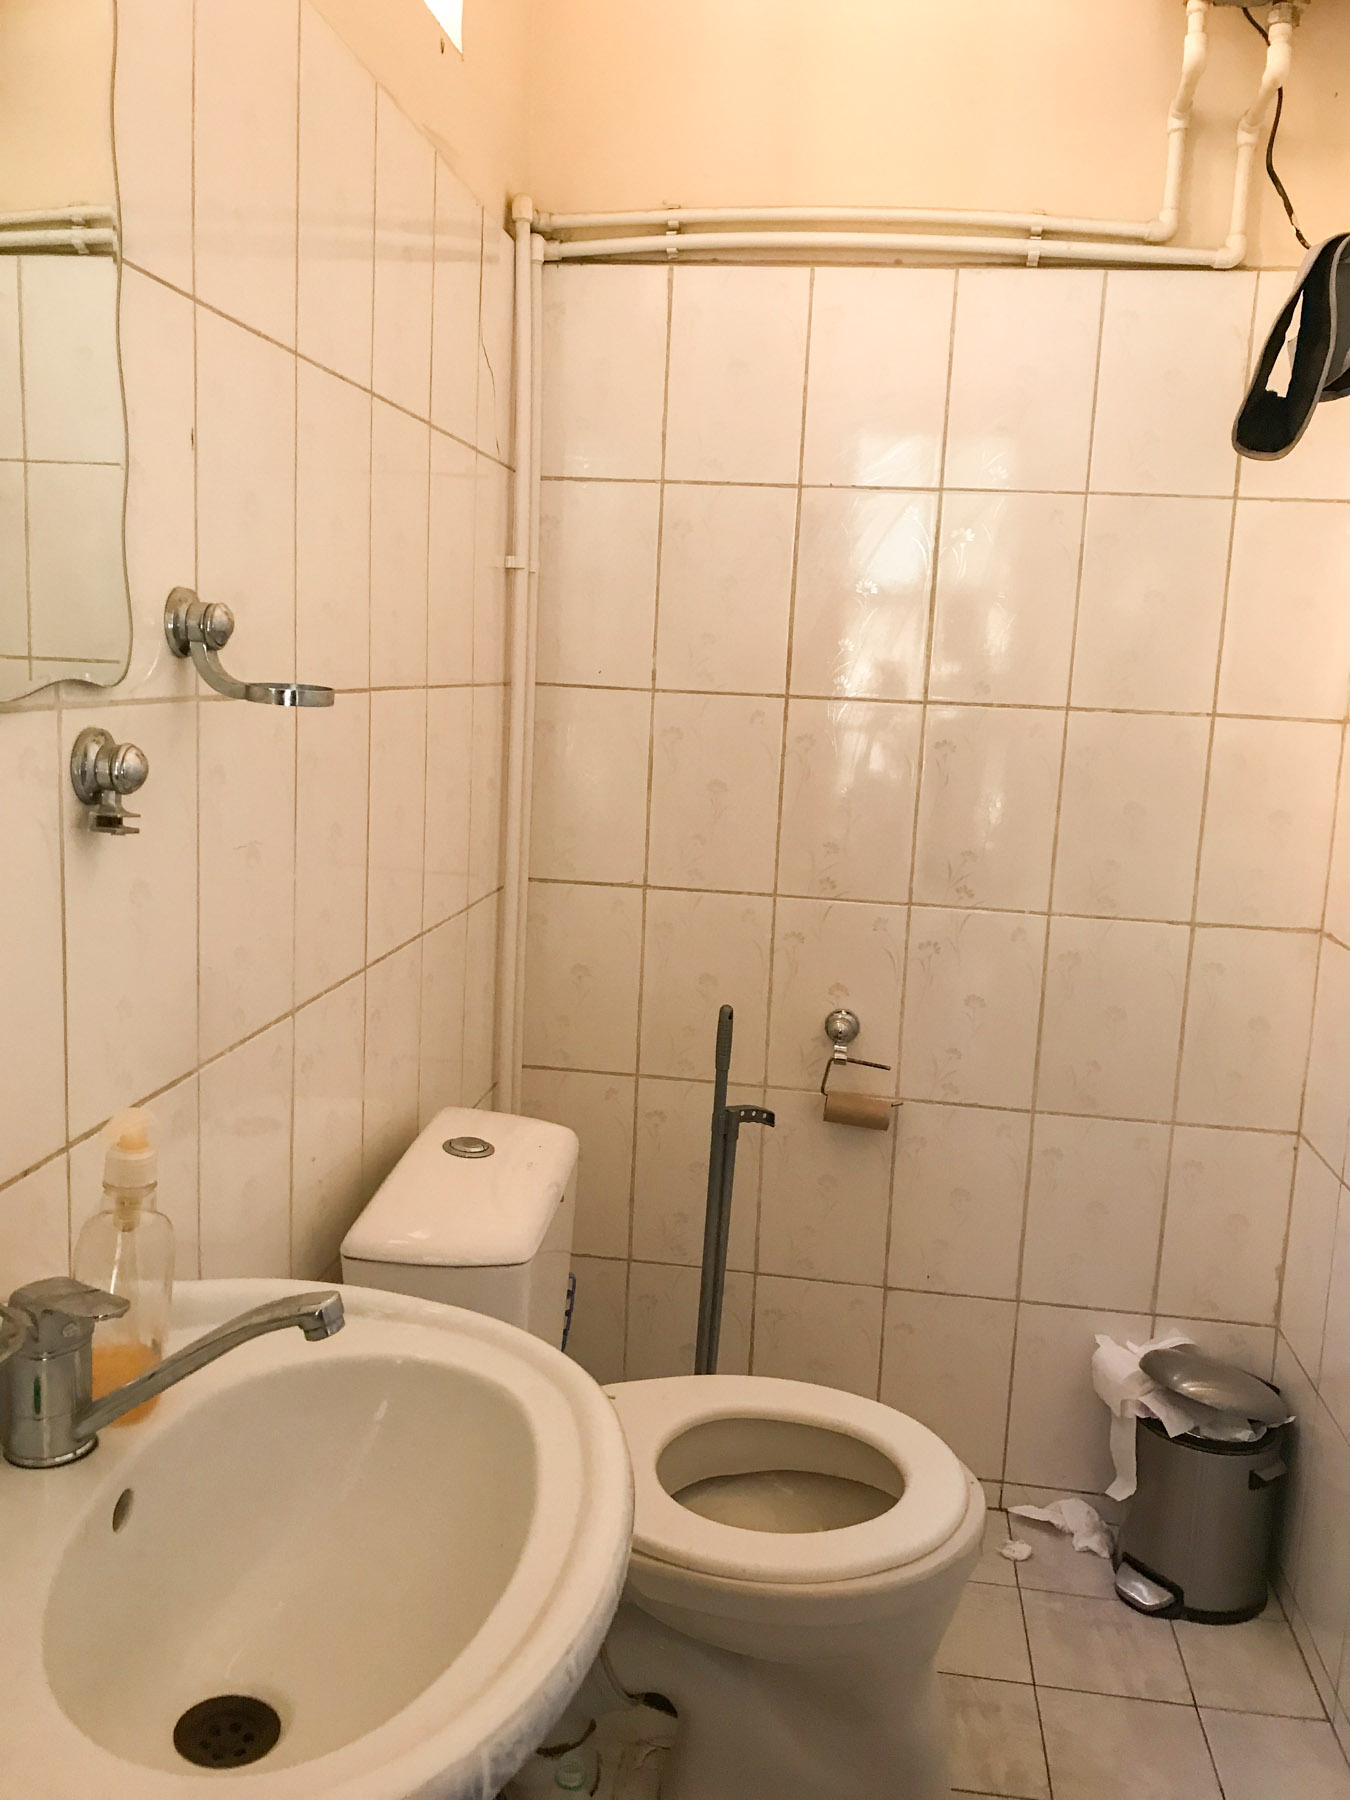 Stuck in the toilet in Uzbekistan